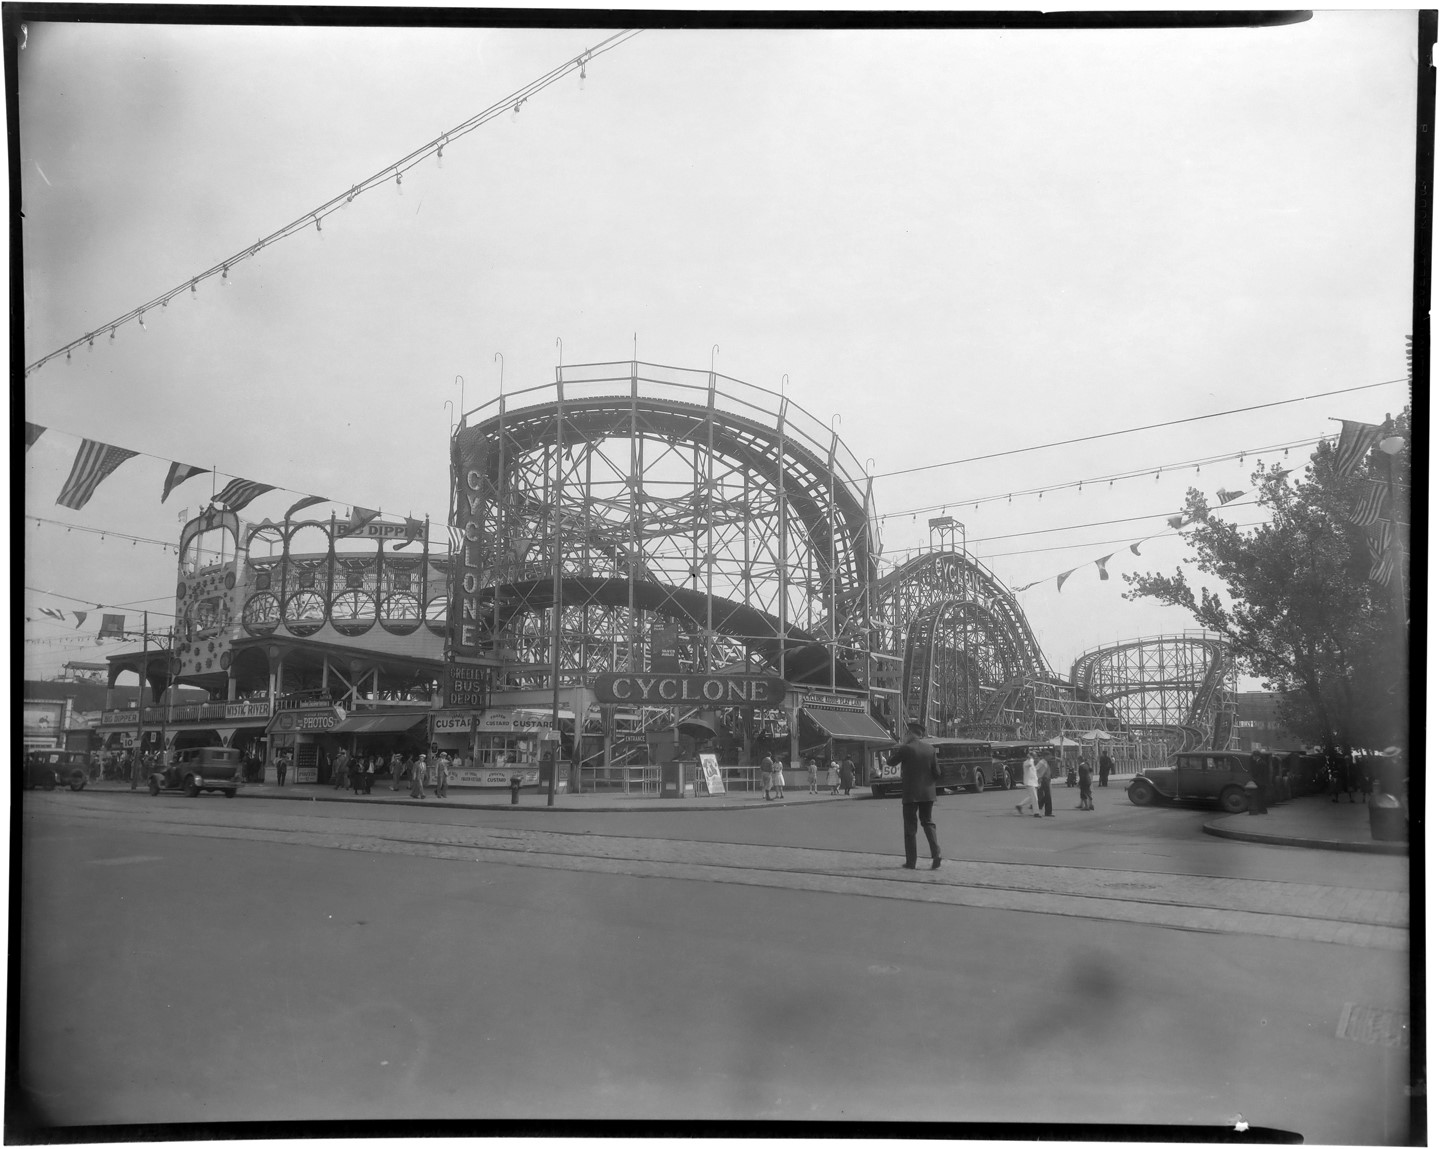 - 1930s Coney Island "Cyclone" Roller Coaster Original Negative